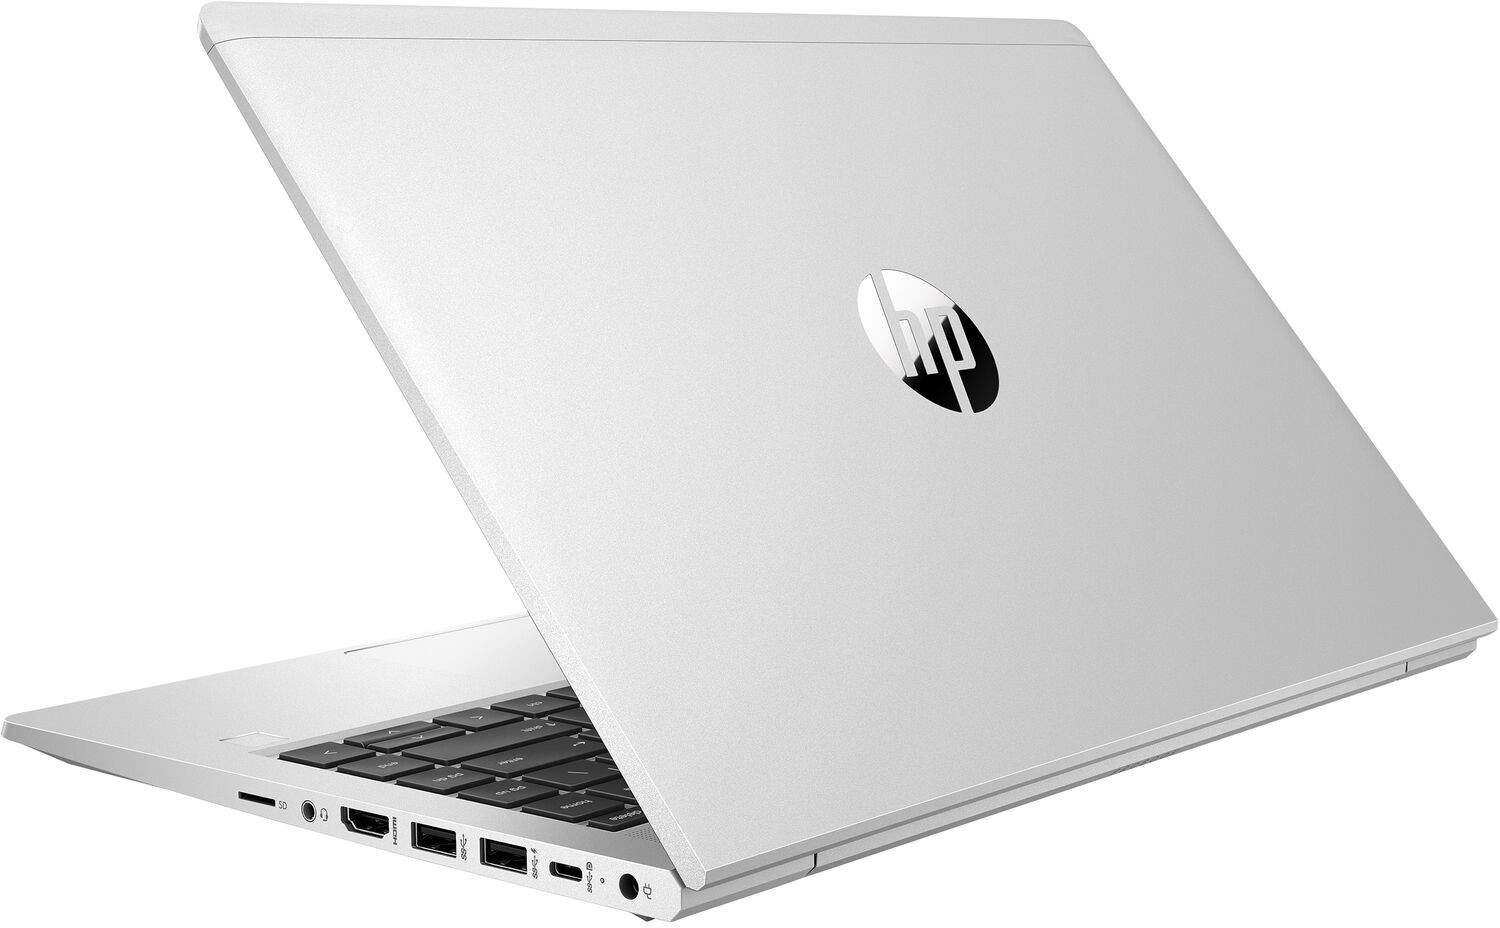 Ноутбук HP ProBook 440 G8 Core i3-1115G4 3.0GHz,14" FHD (1920x1080) AG,8Gb DDR4(2x4GB),256Gb SSD,45Wh LL,FPR,1.6kg,1y,Silver,DOS-39334